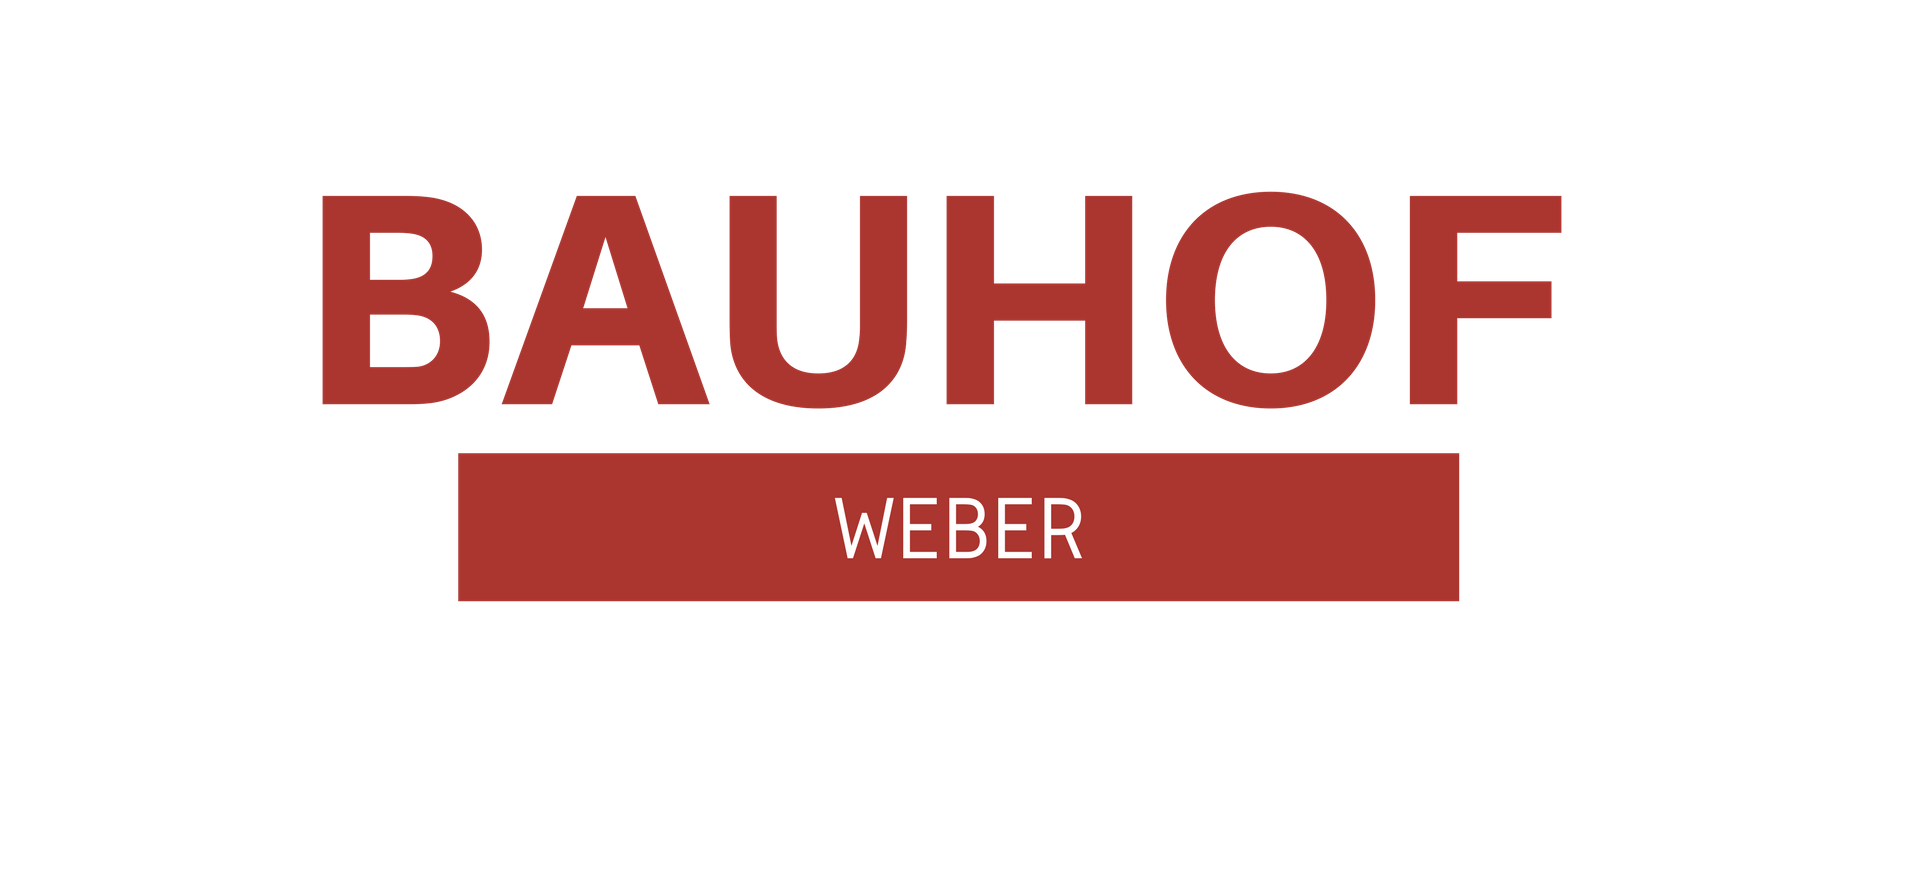 Bauhof Weber